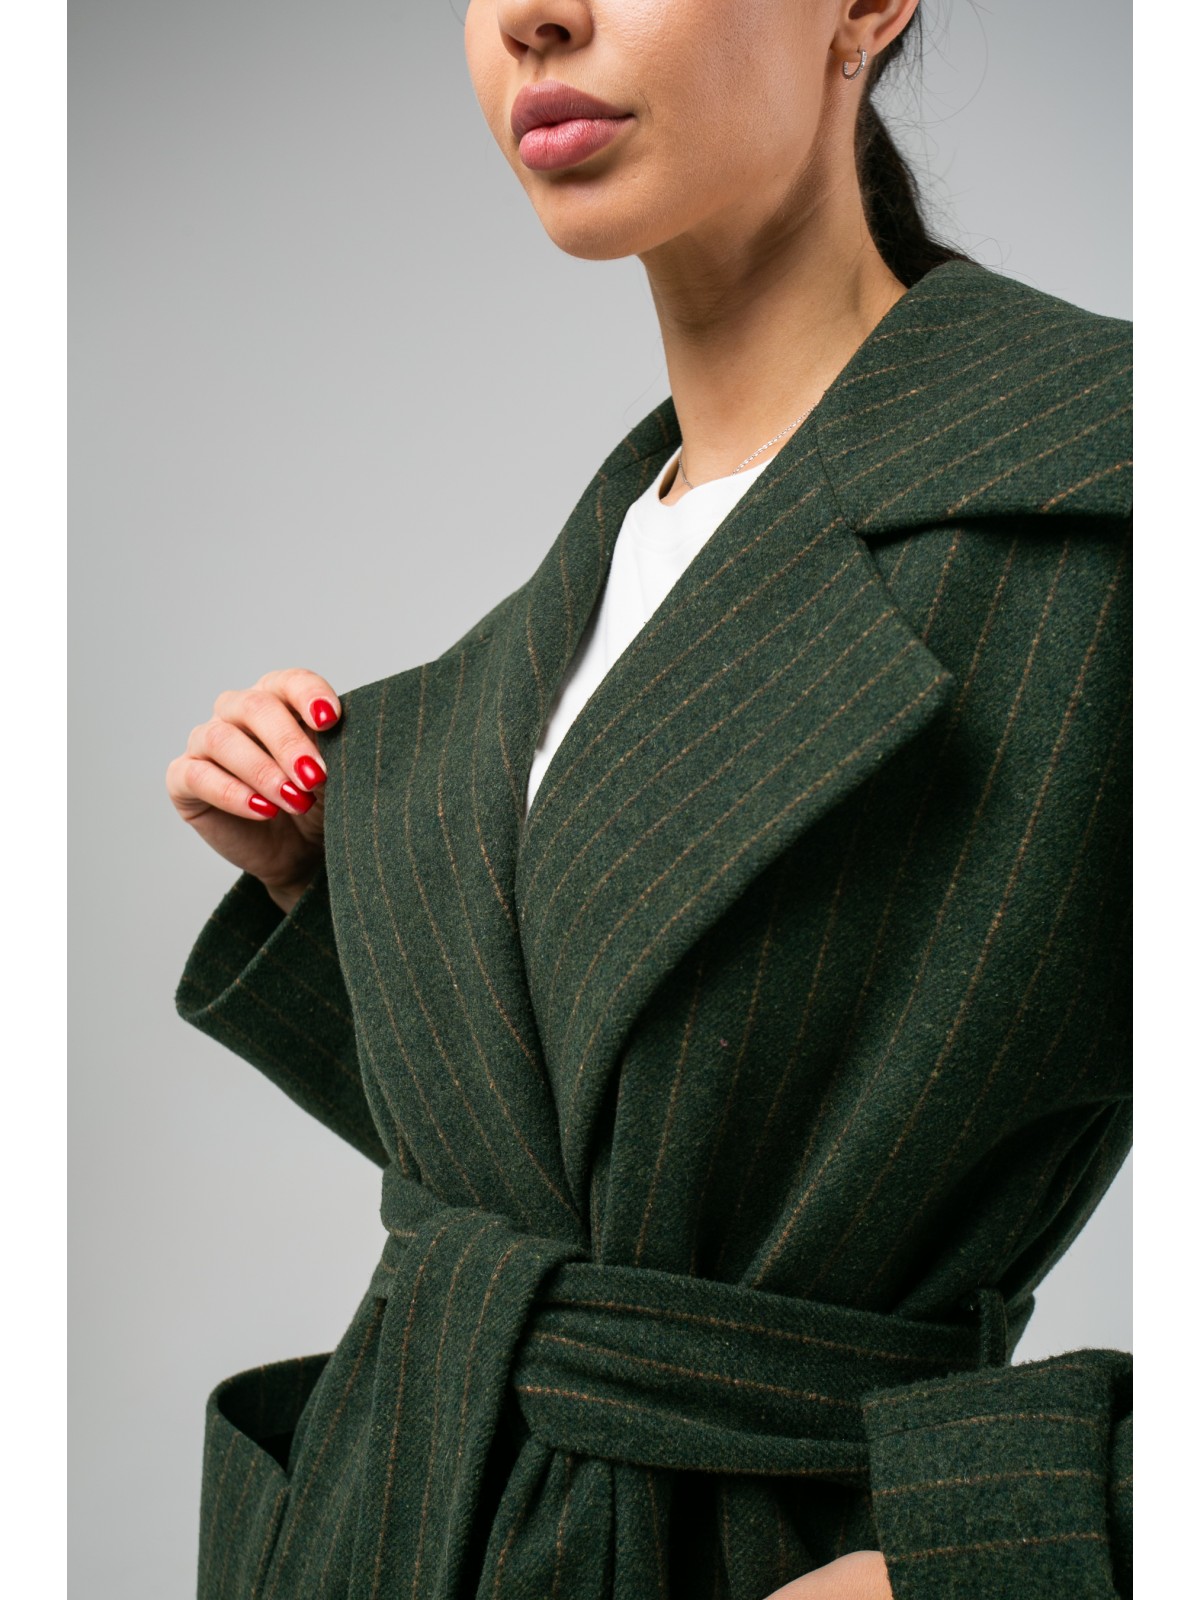 Пальто-халат на пуговицах Green Striped (Зеленый)